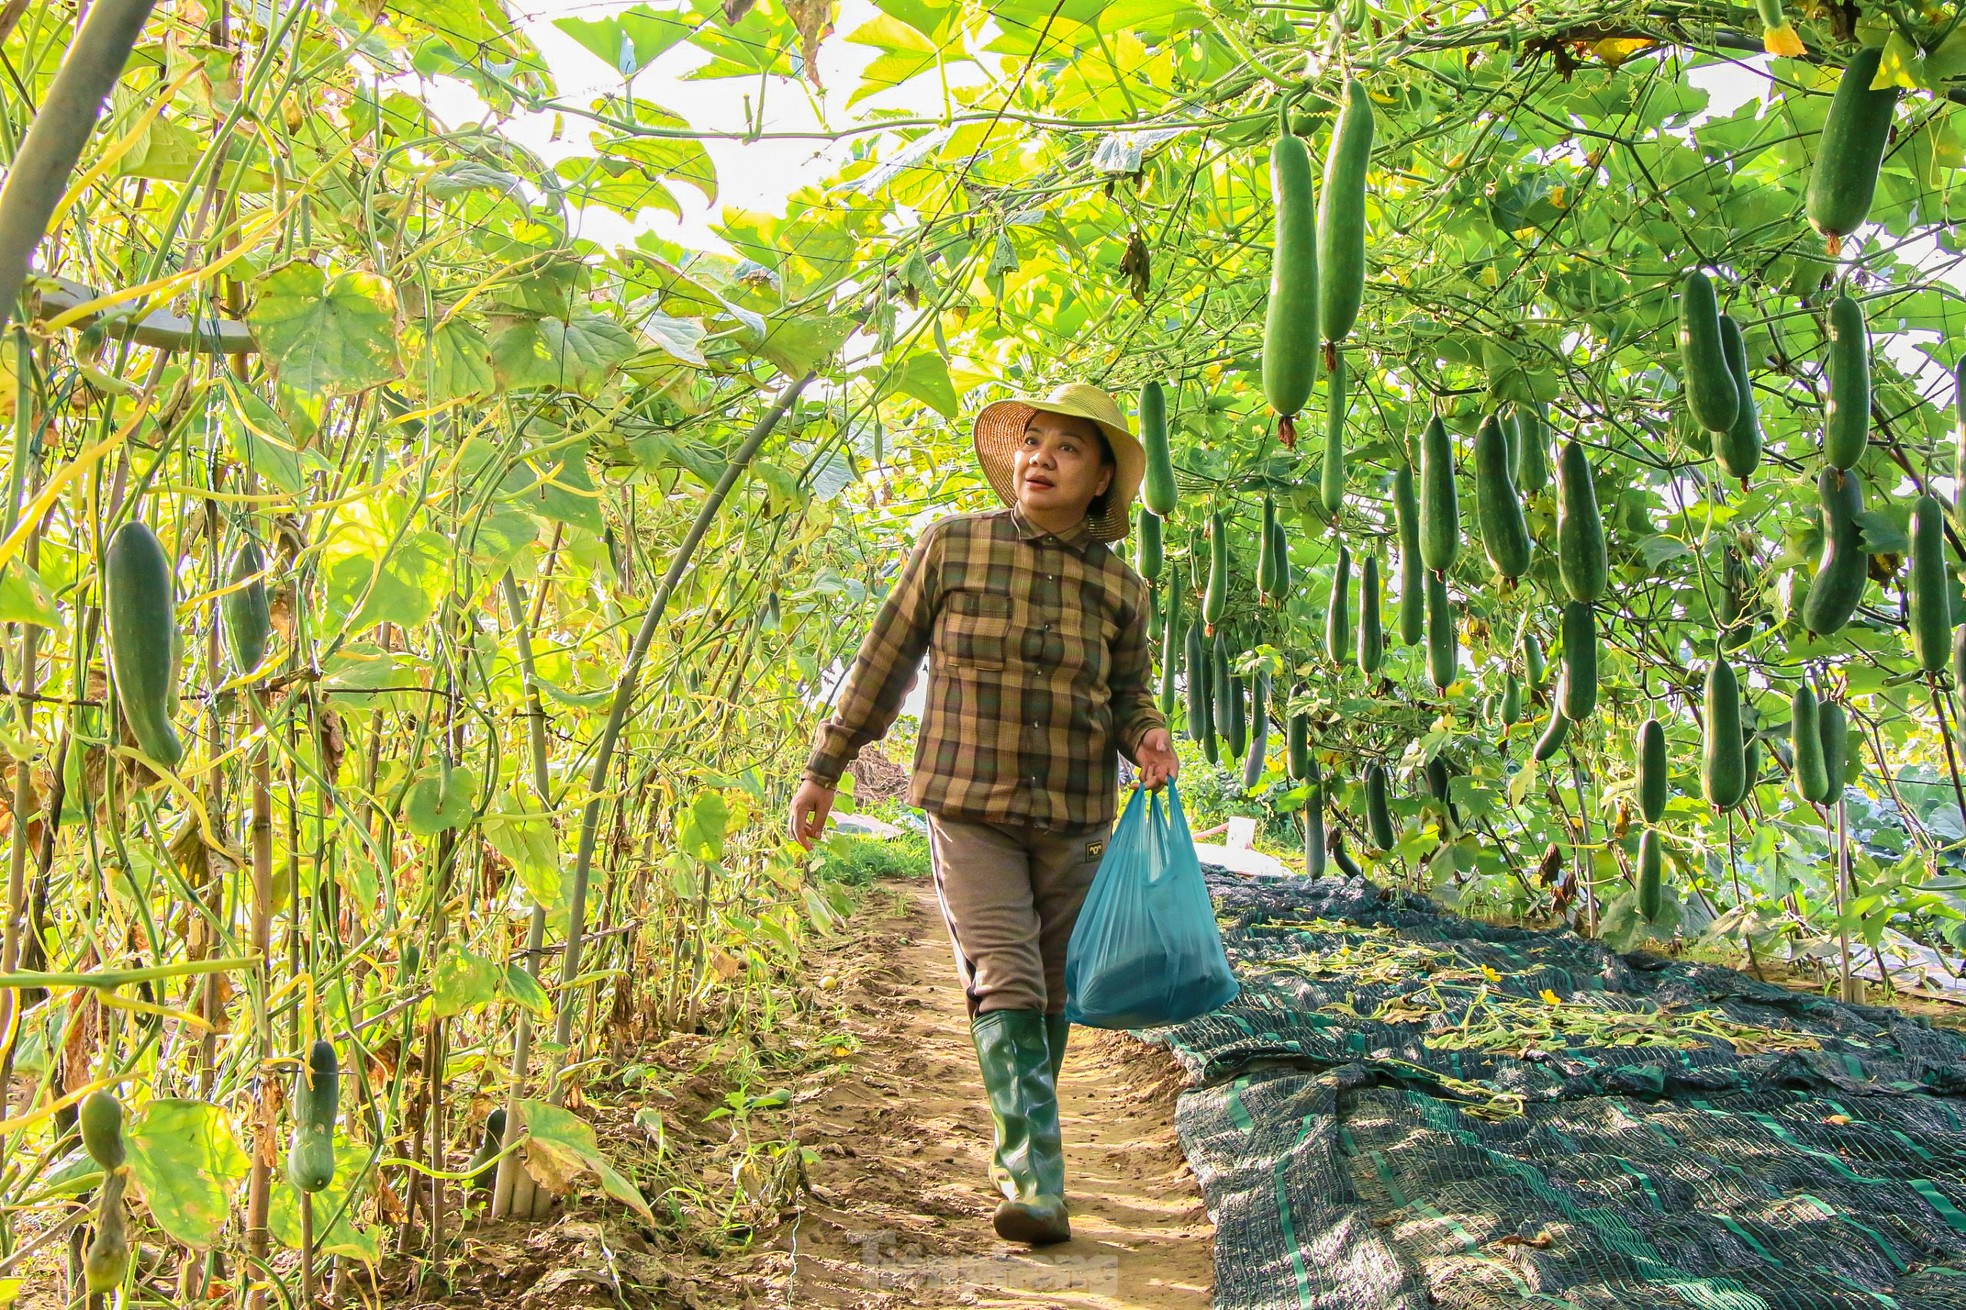 Nông dân ở làng rau này ở Đà Nẵng dùng "độc chiêu" giúp những vườn mướp của mình cho trái to, dài, thẳng tắp- Ảnh 4.